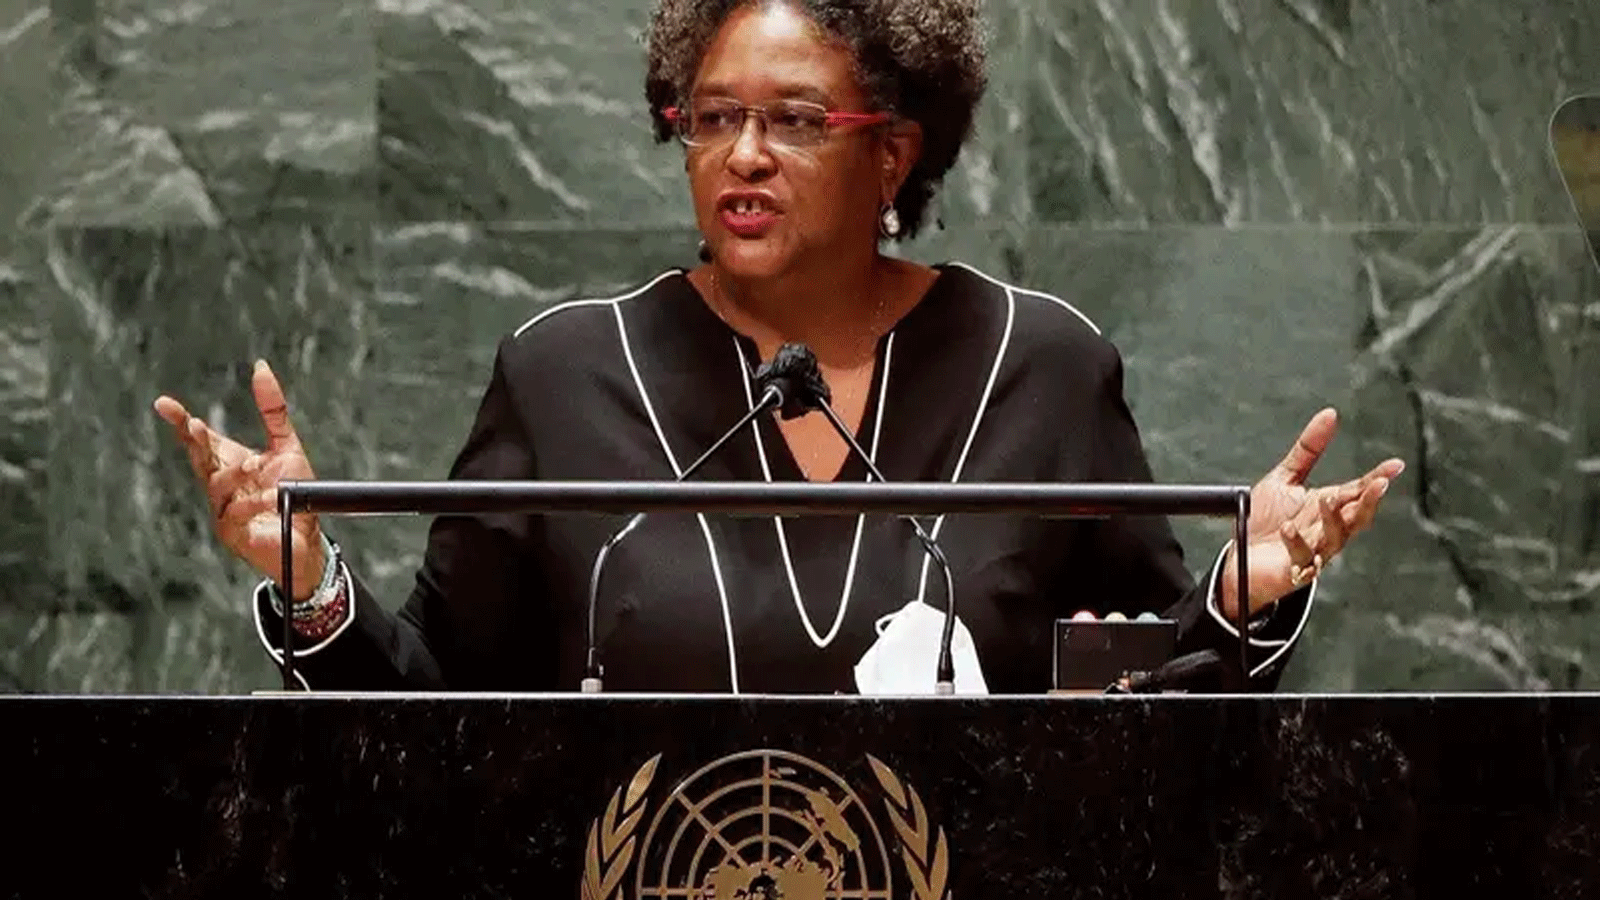 ميا موتلاي: امرأة من الكرايببي مُرشحة للأمانة العامة للأمم المتحدة